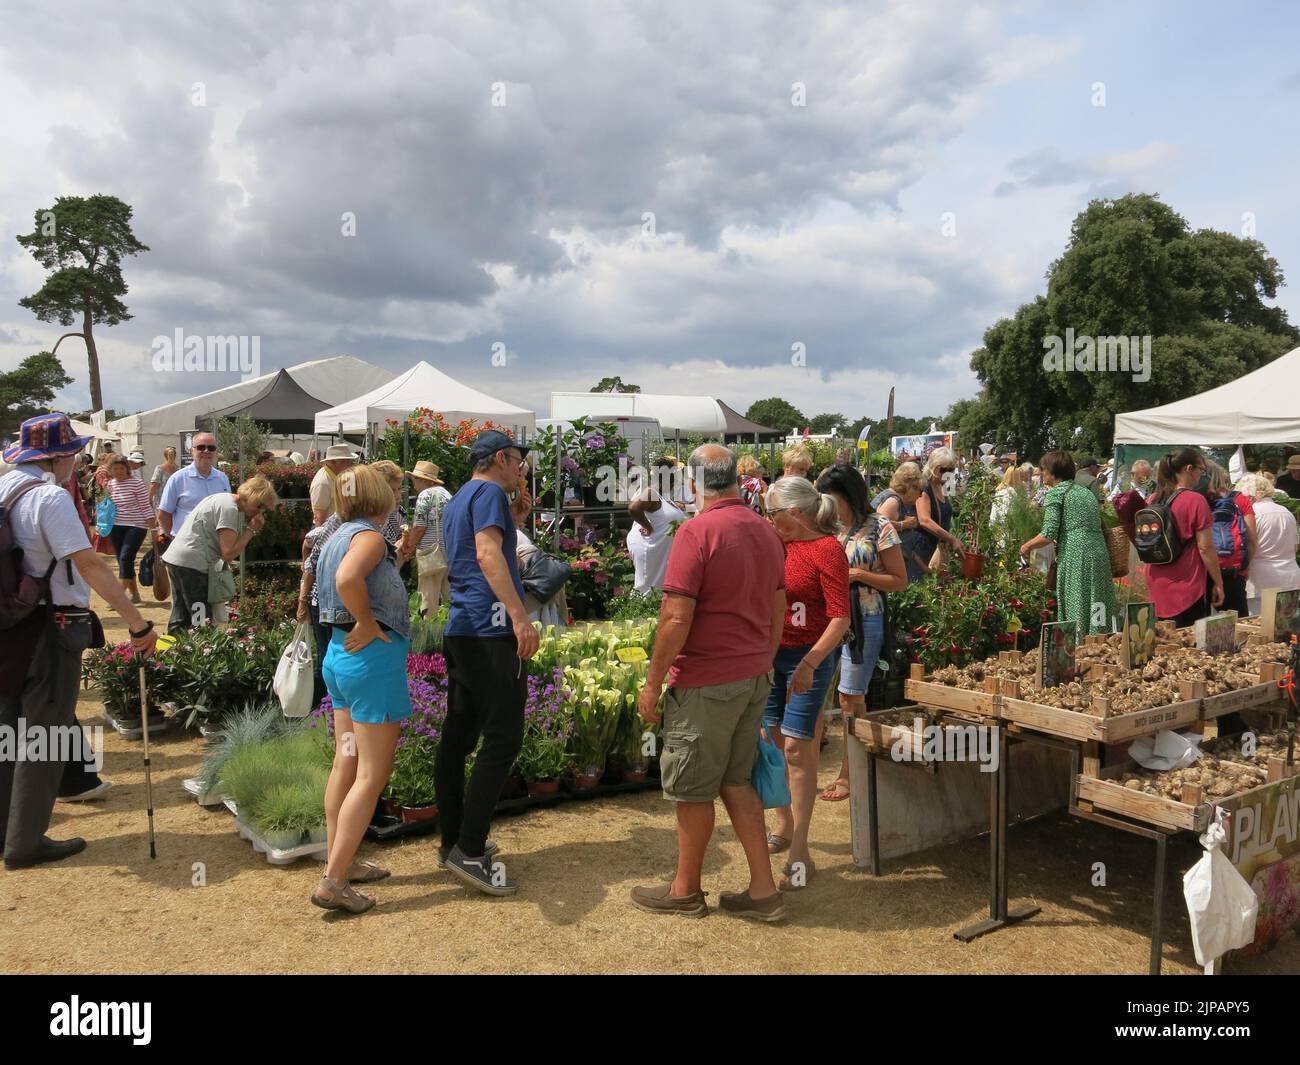 Bancarelle di piante e vivai specializzati sono una delle caratteristiche che attraggono la folla all'annuale Sandringham Flower Show. Foto Stock